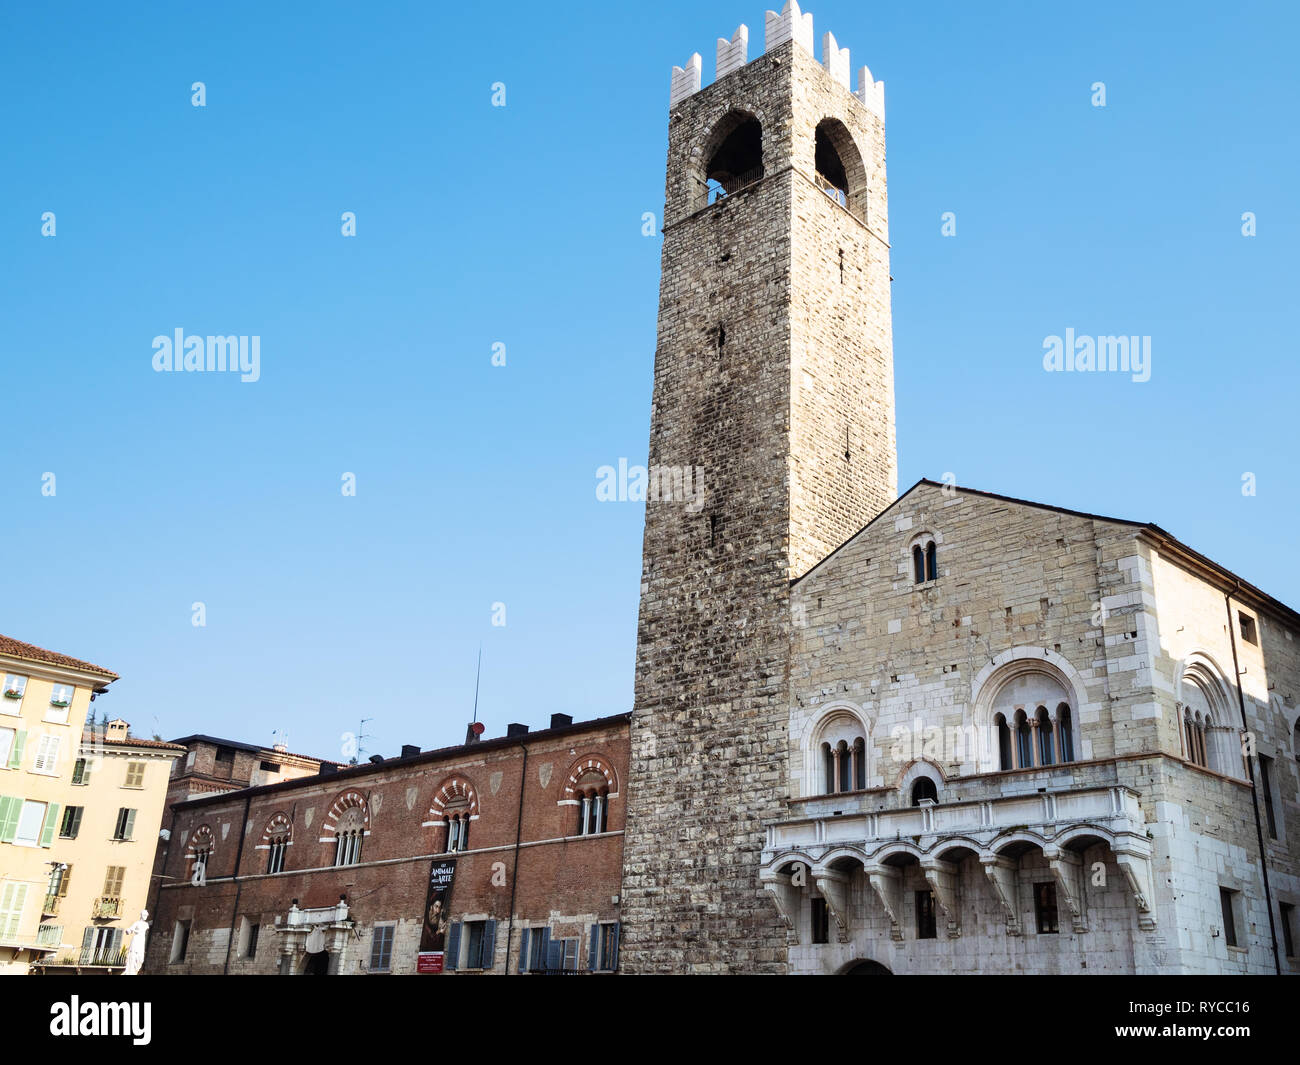 BRESCIA, Italien - 21. FEBRUAR 2019: Altes Rathaus Broletto, Turm Torre del Pegol, mittelalterliches Haus Loggia delle Grida auf der Piazza Paolo VI (Piazza Stockfoto